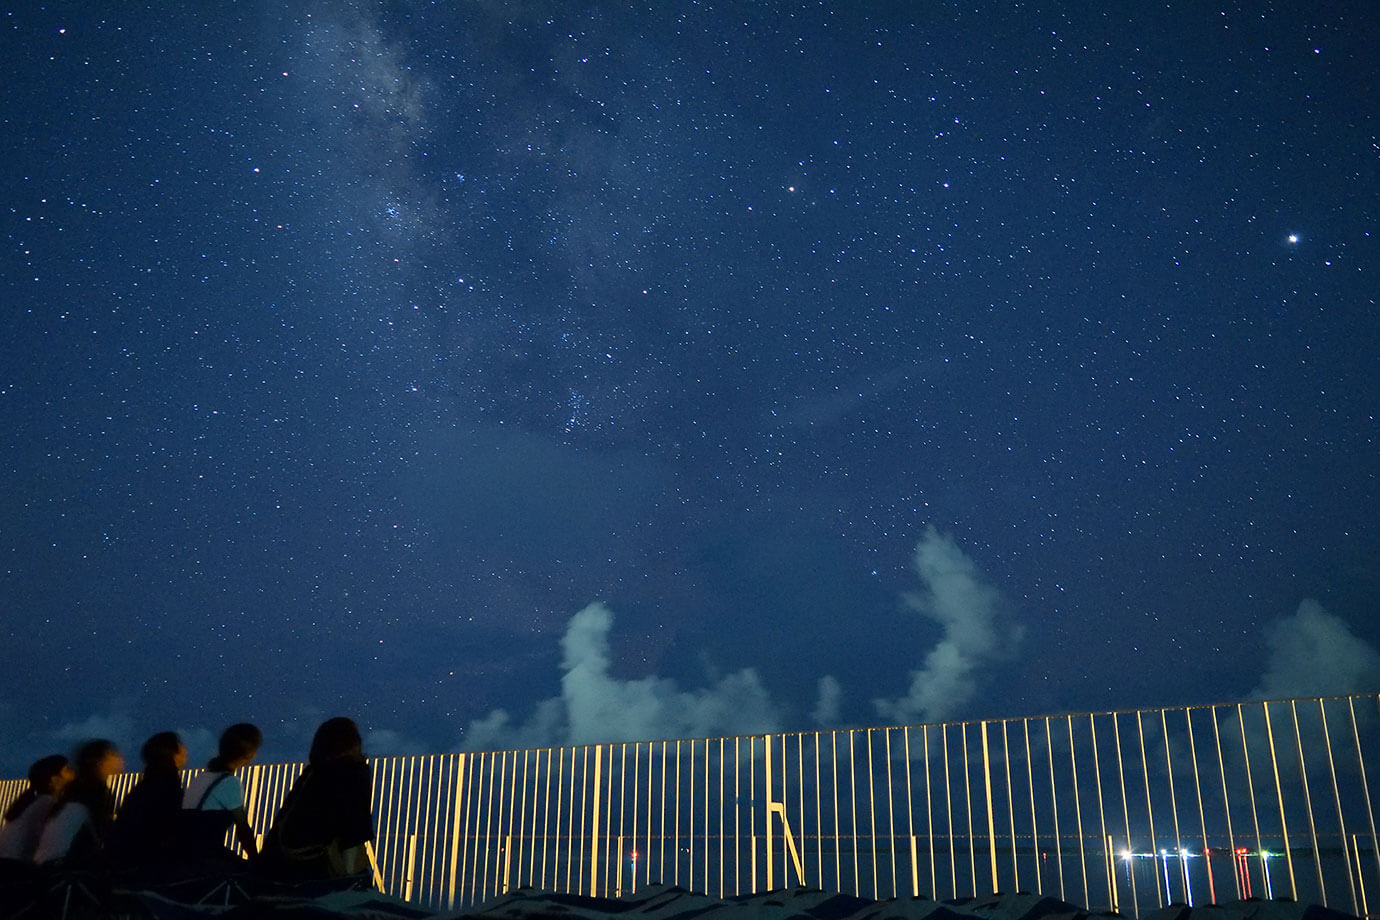 Gazing at the star-filled night sky of Ishigaki